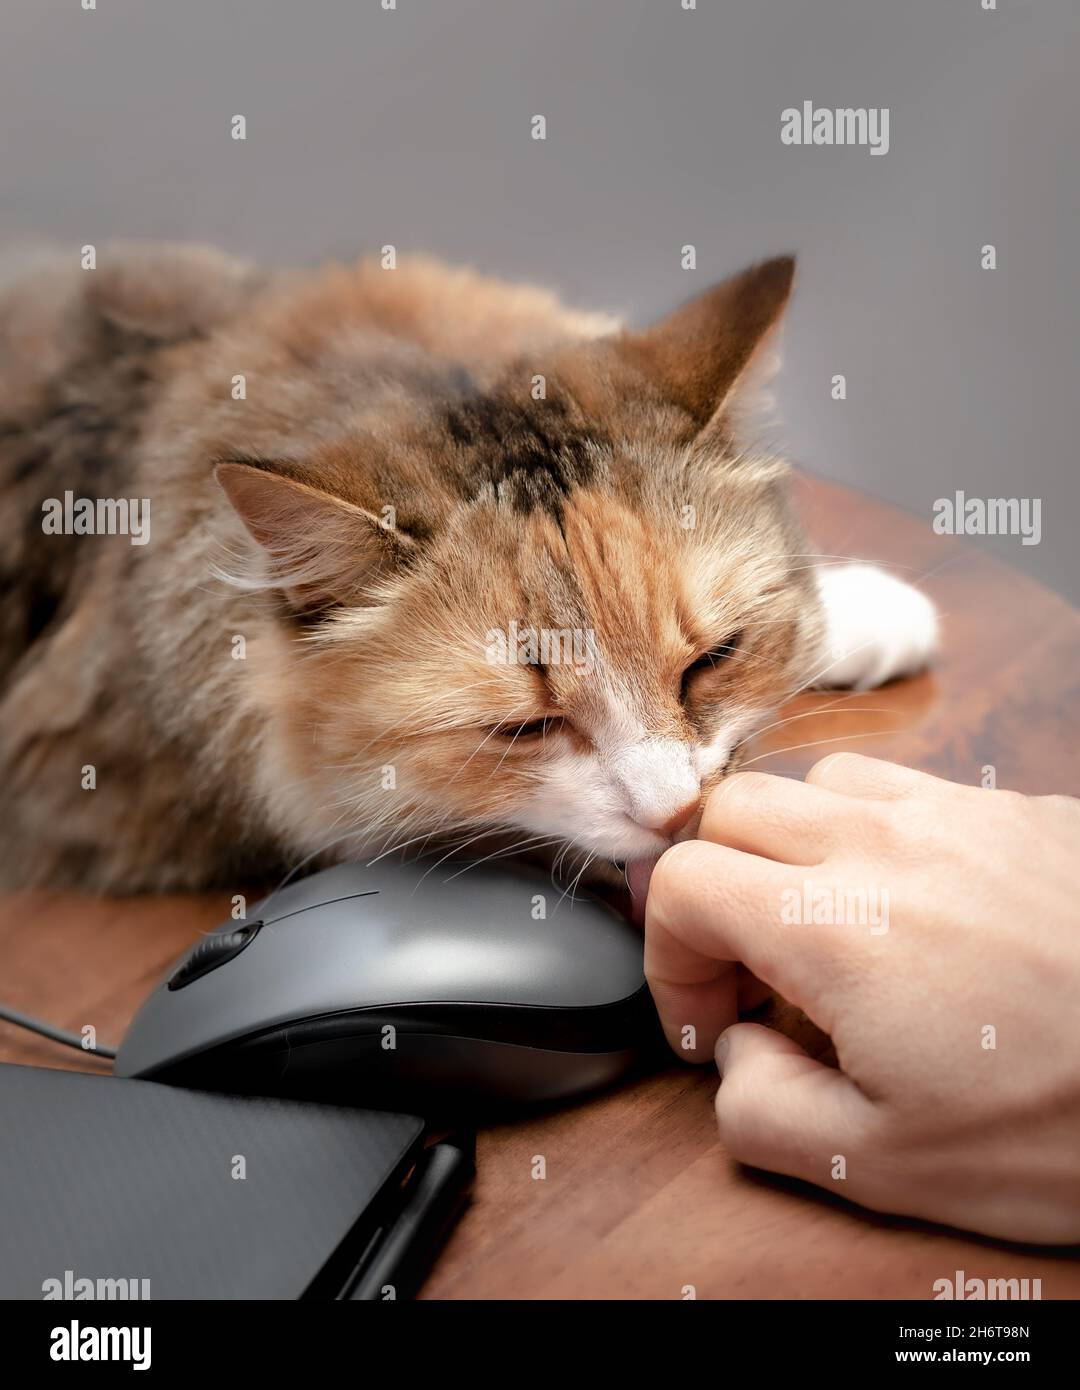 Nahaufnahme einer Katze, die menschliche Hand leckt, während sie am Laptop arbeitet. Nette flauschige Katze zeigt Zuneigung und soziale Bindung oder Freundschaft mit dem Tierbesitzer, während Stockfoto